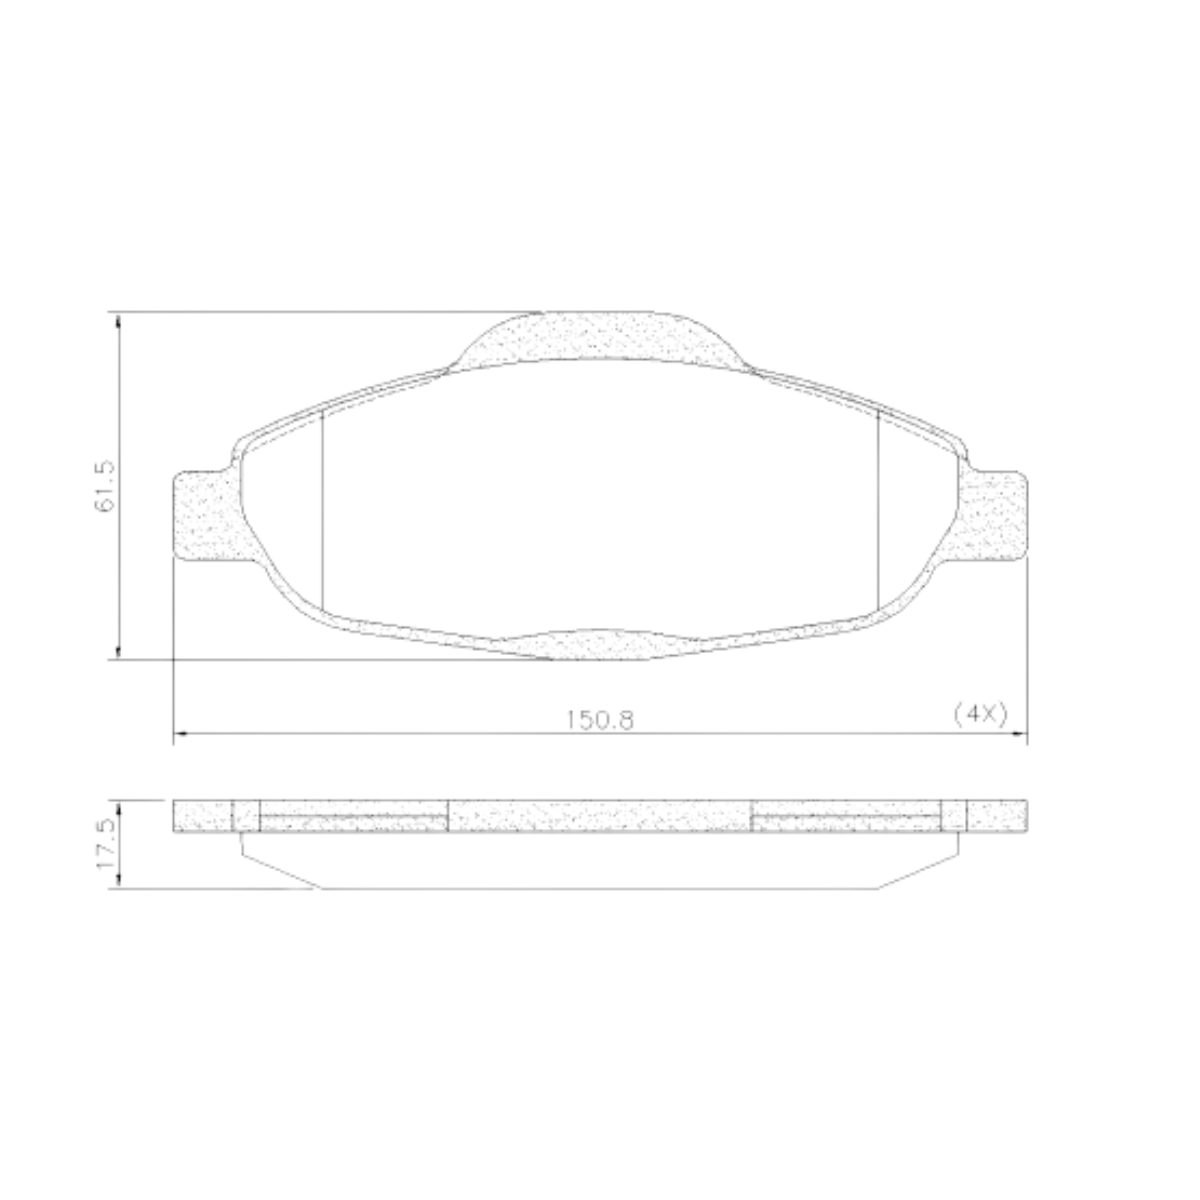 Pastilha Freio Peugeot 308 1.6 16v Roland Garros Thp 2014 Ate 2015 Dianteira Sistema Bosch, Ceramica Fras-le Pd-1470-cmaxx